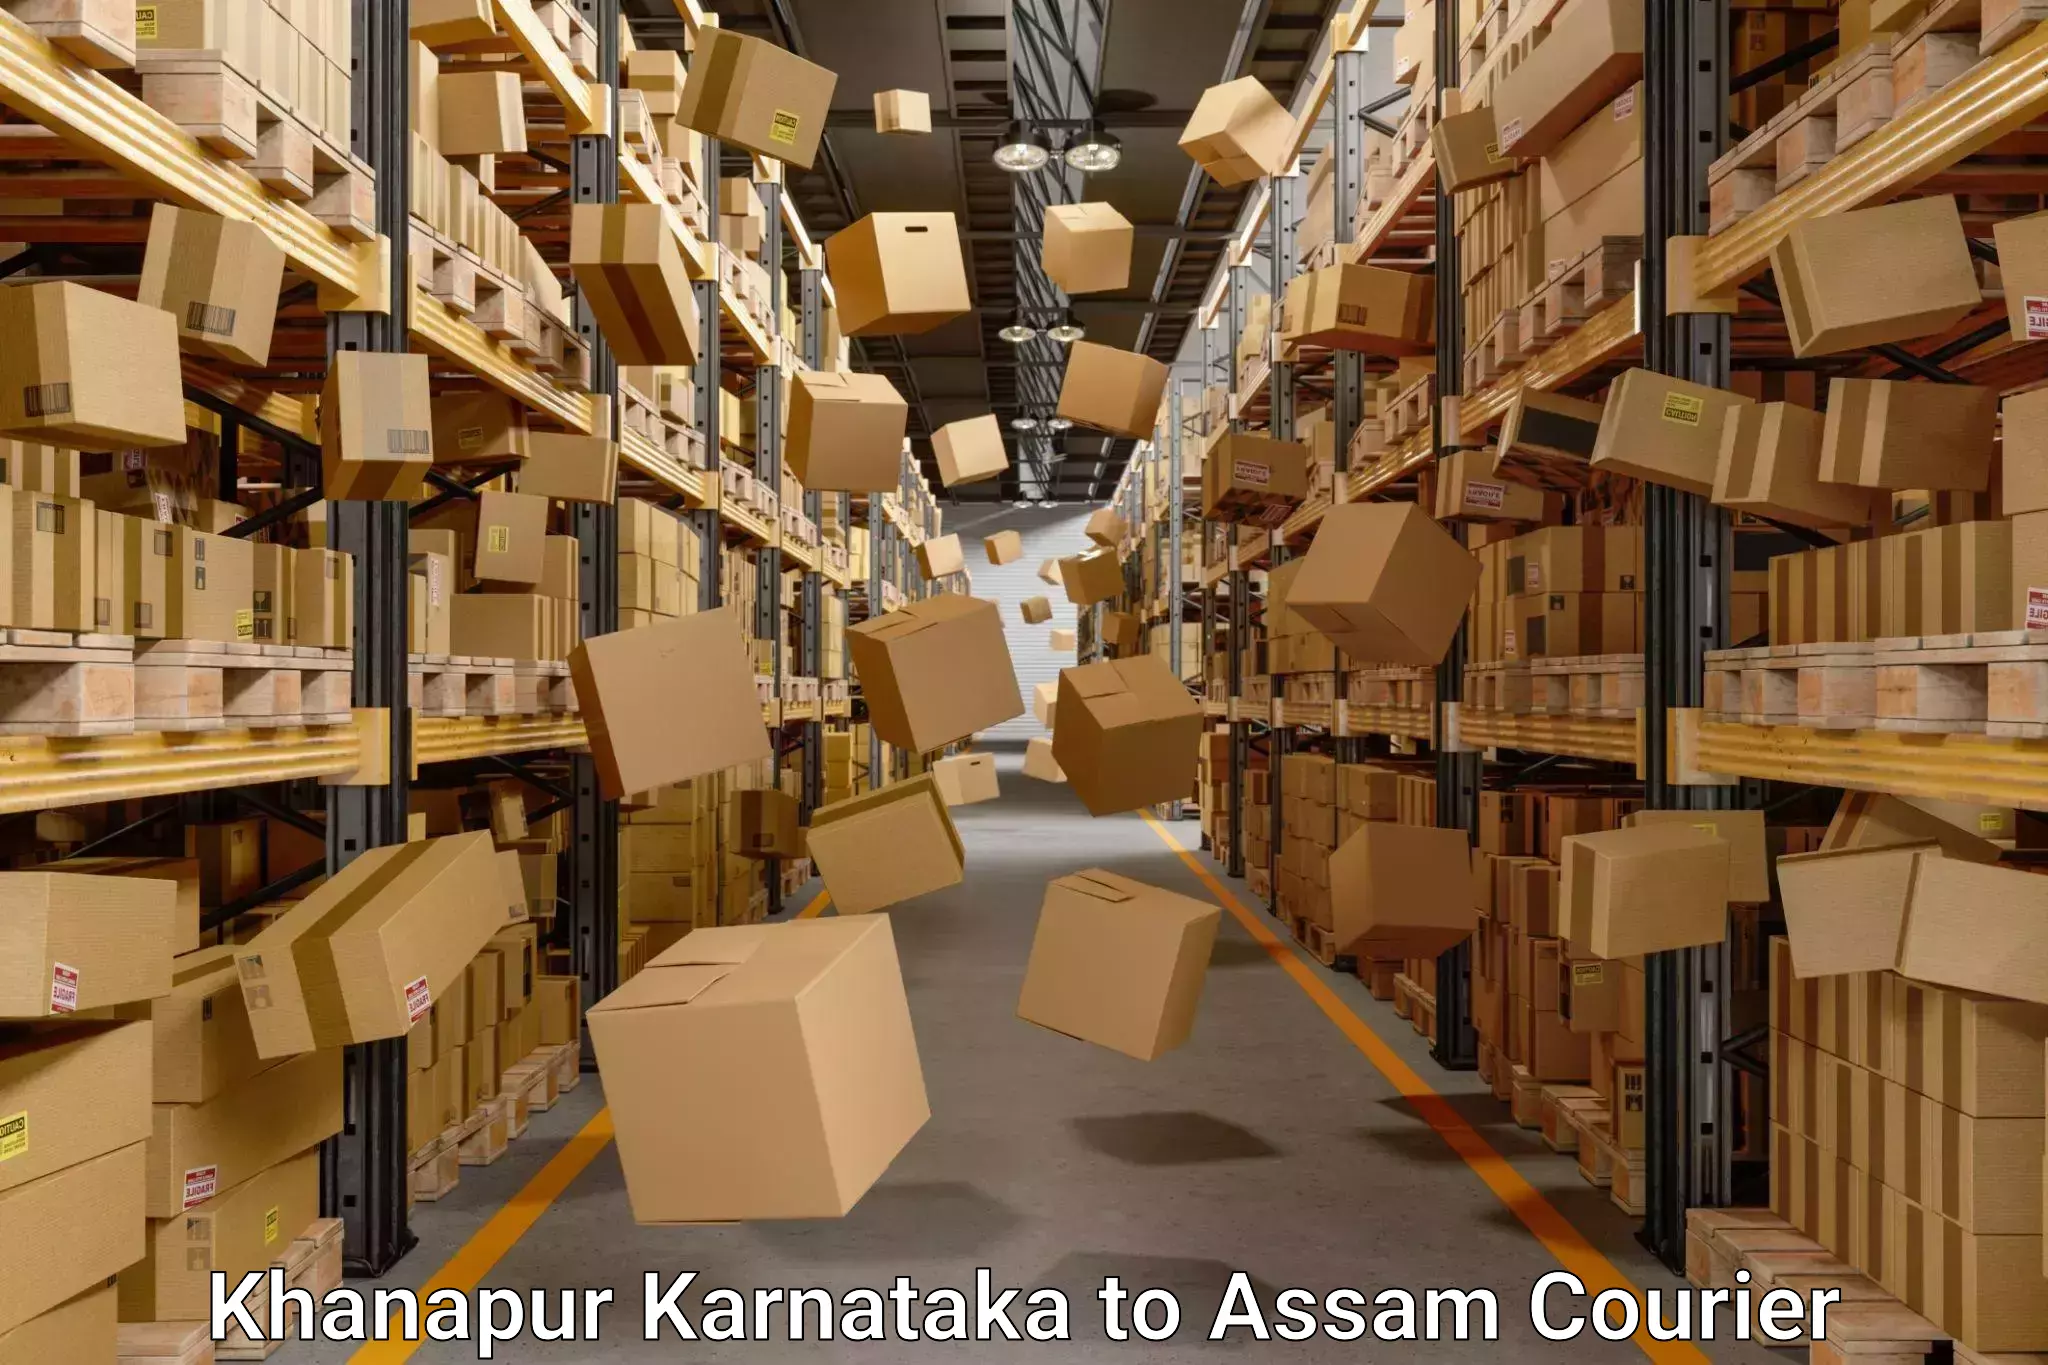 Seamless moving process Khanapur Karnataka to Guwahati University